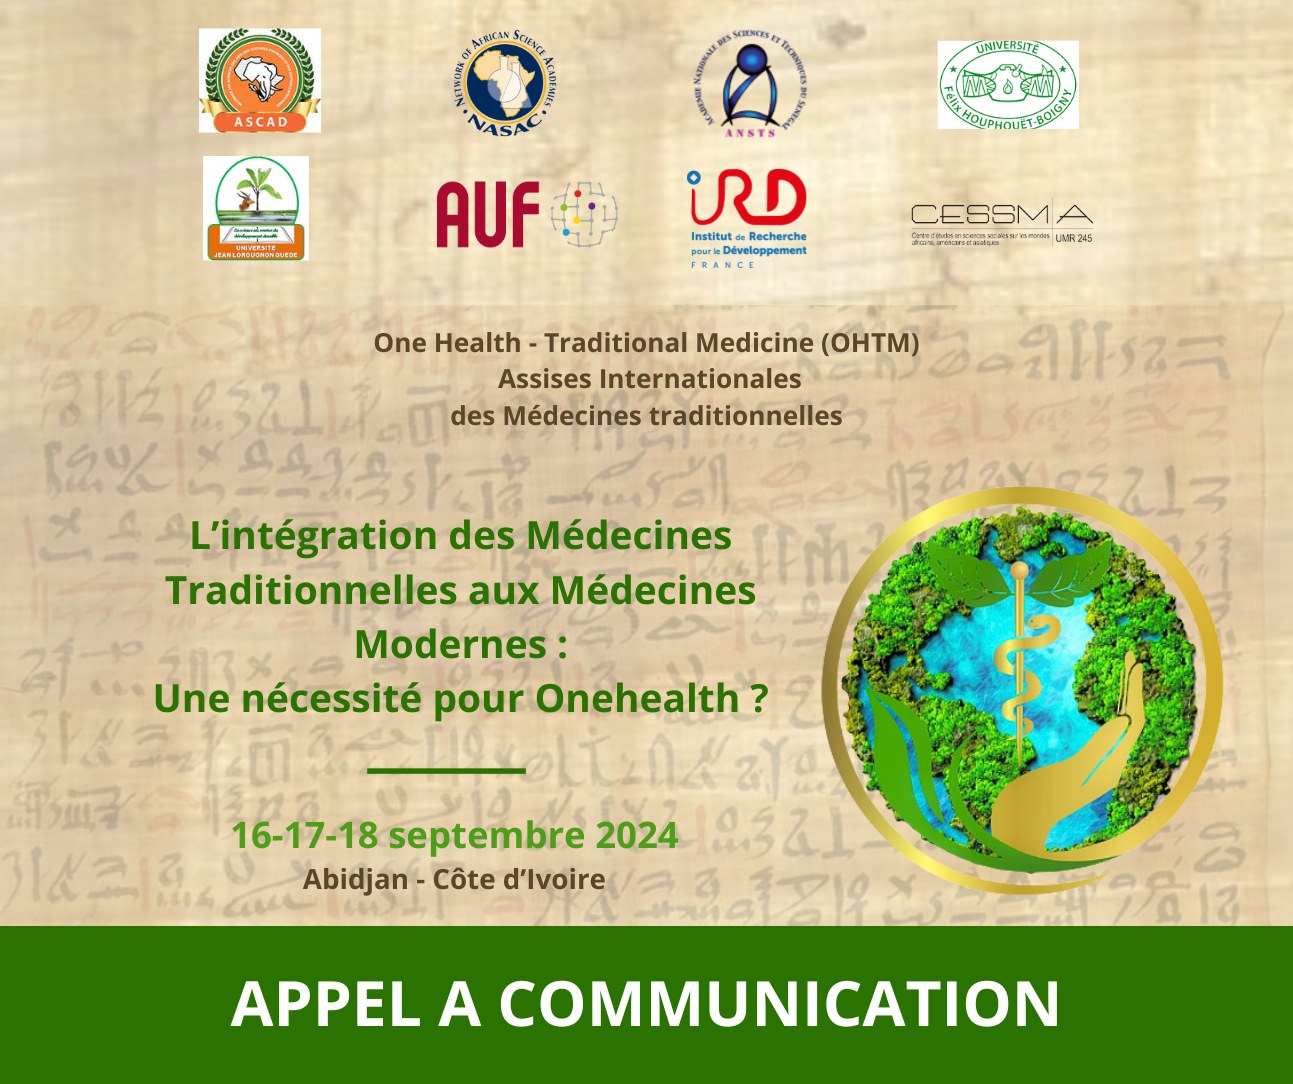 Copie de Copie de One Health - Traditional Medicine (OHTM) - Assises Internationales des Médecines traditionnelles (210 x 297 mm)